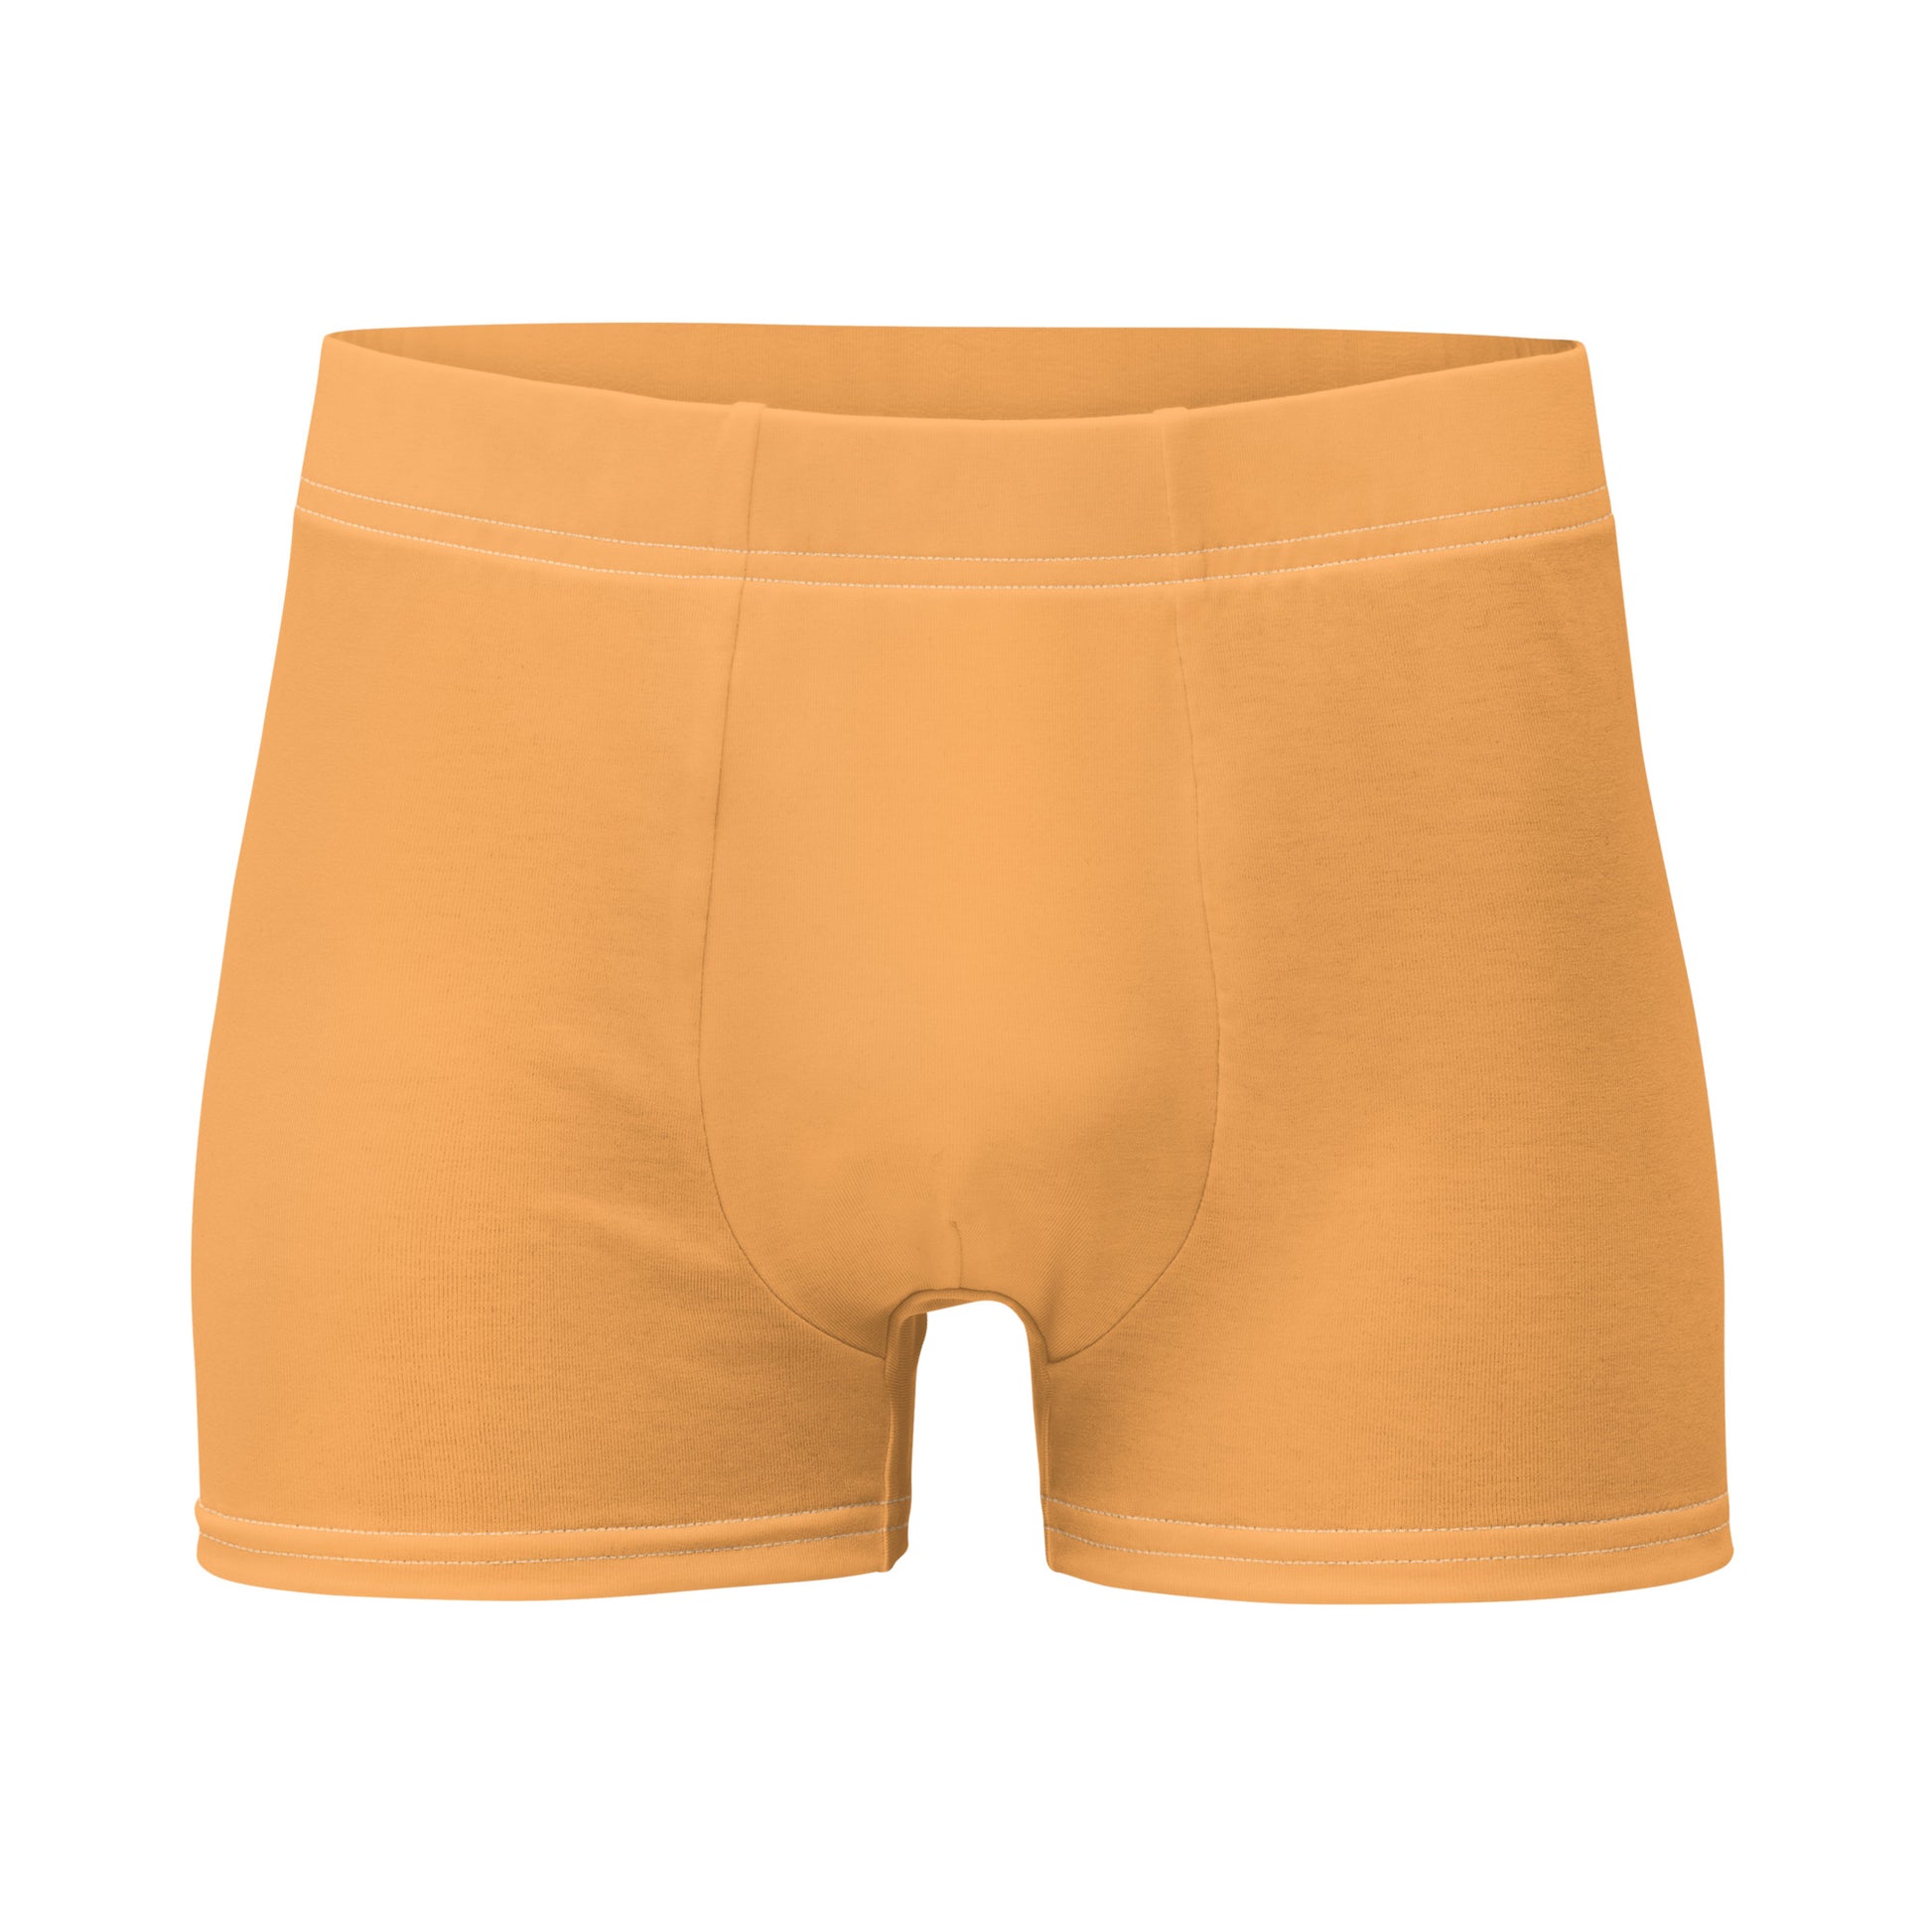 Conversation Hearts Men's Boxer Briefs Underwear